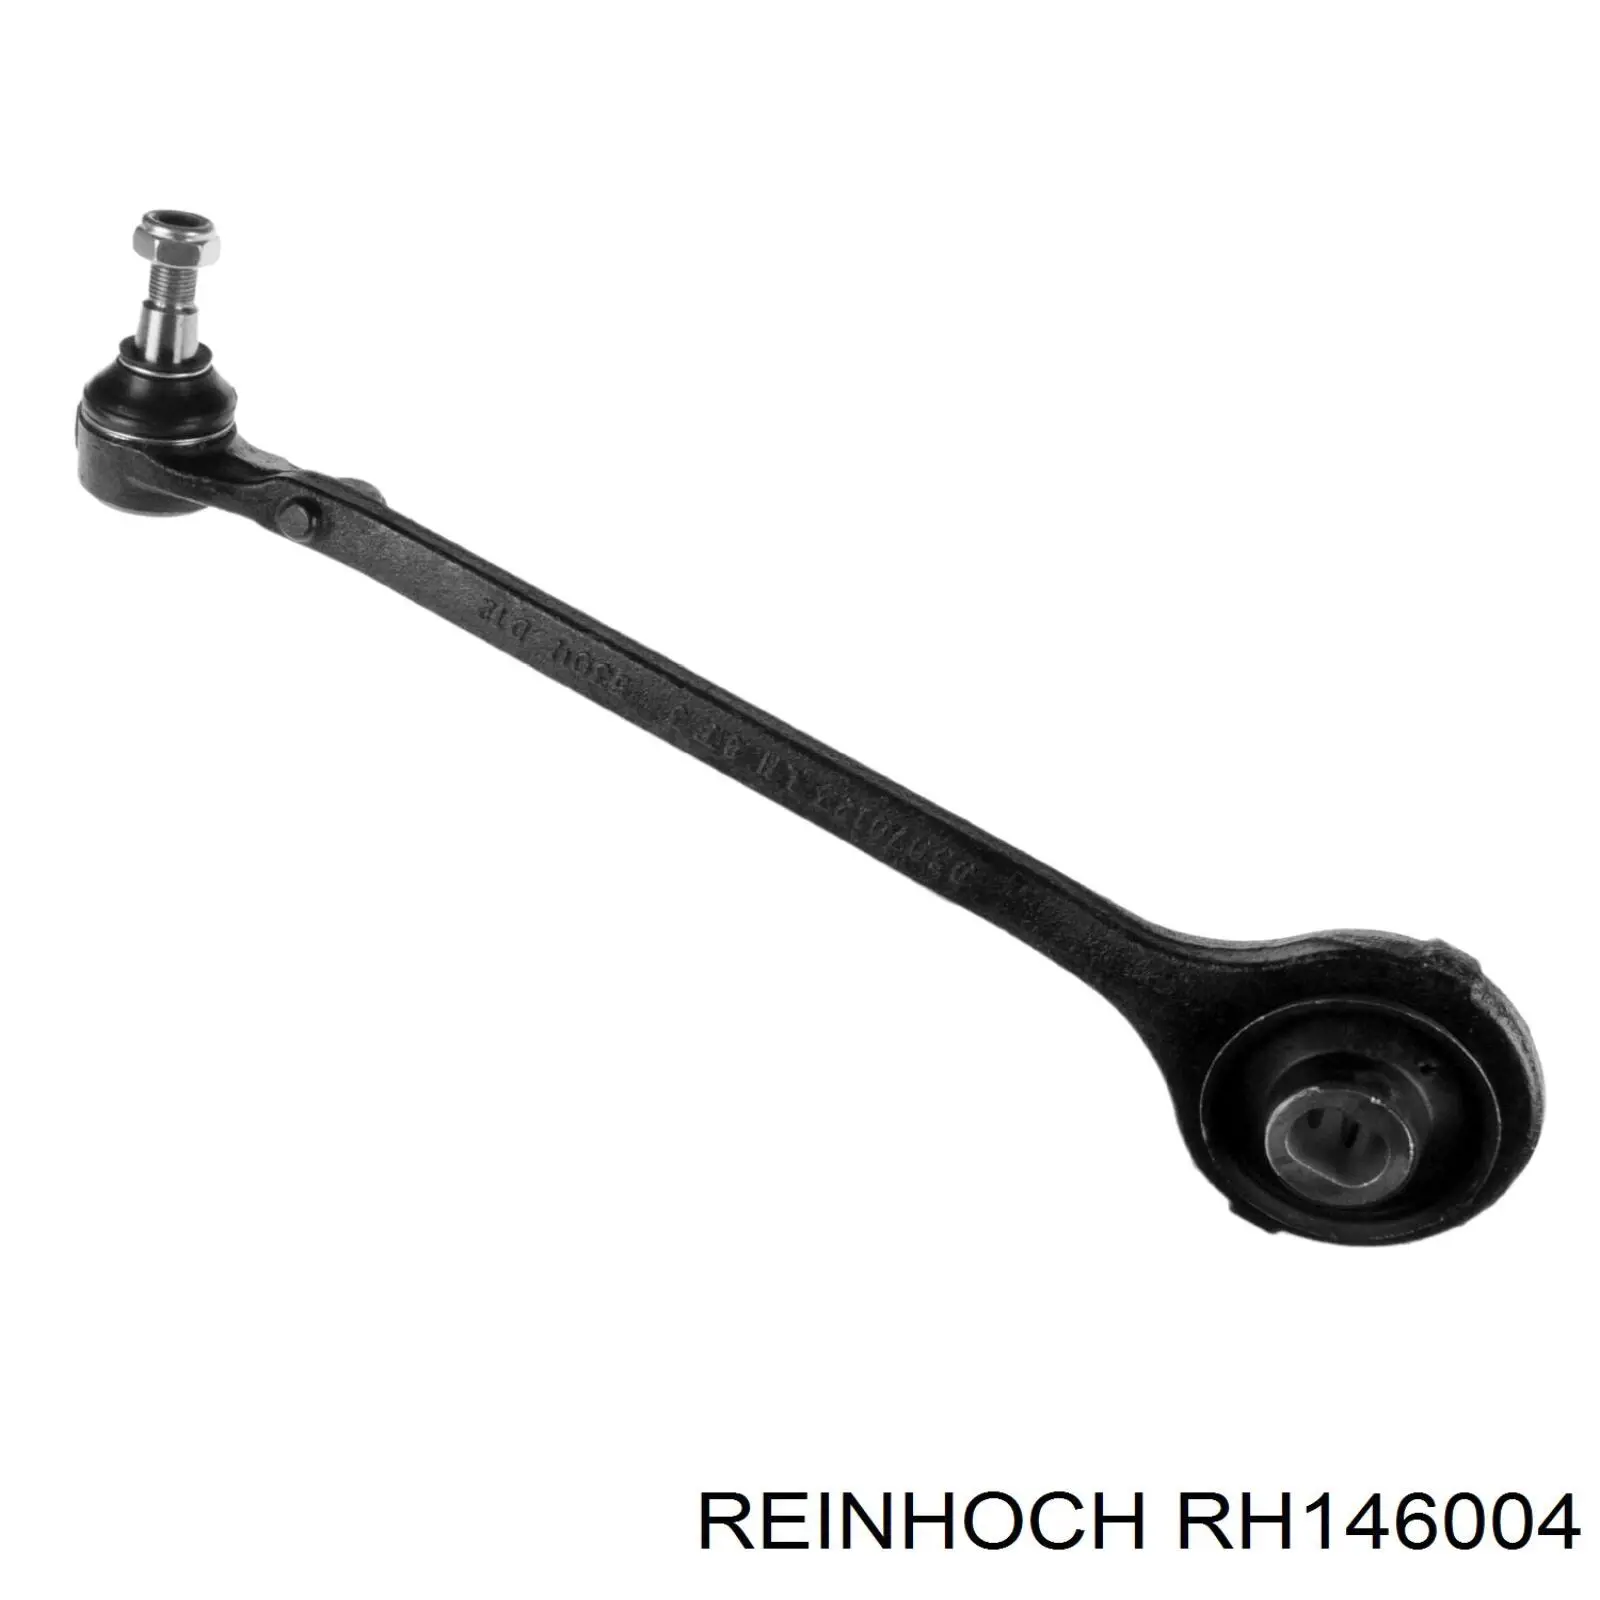 RH146004 Reinhoch silentblock de suspensión delantero inferior